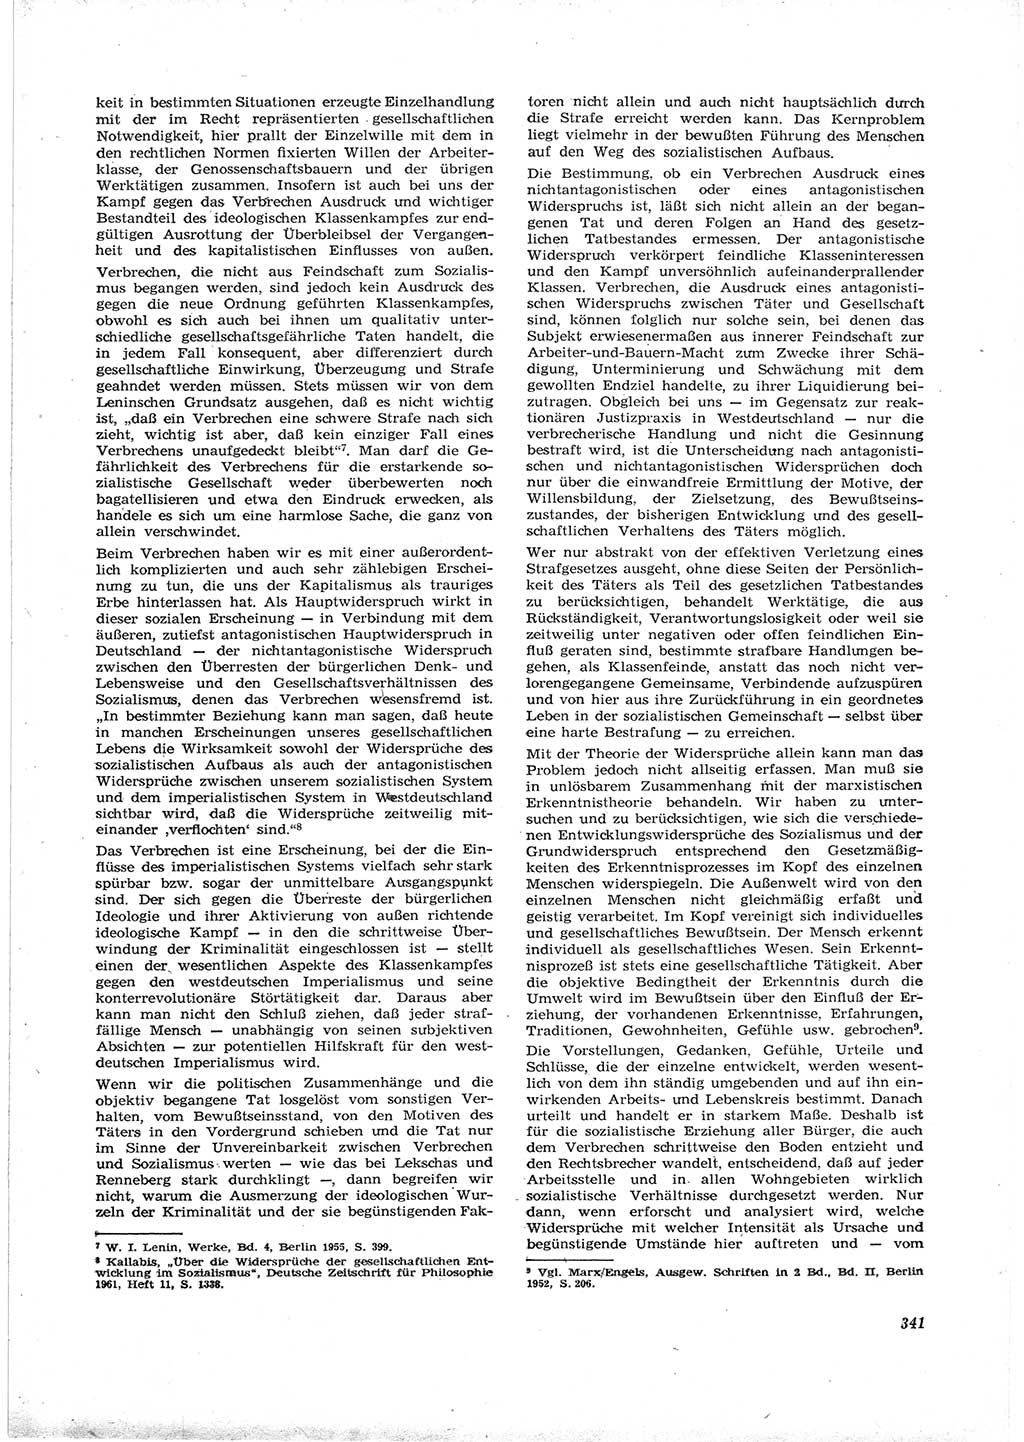 Neue Justiz (NJ), Zeitschrift für Recht und Rechtswissenschaft [Deutsche Demokratische Republik (DDR)], 16. Jahrgang 1962, Seite 341 (NJ DDR 1962, S. 341)